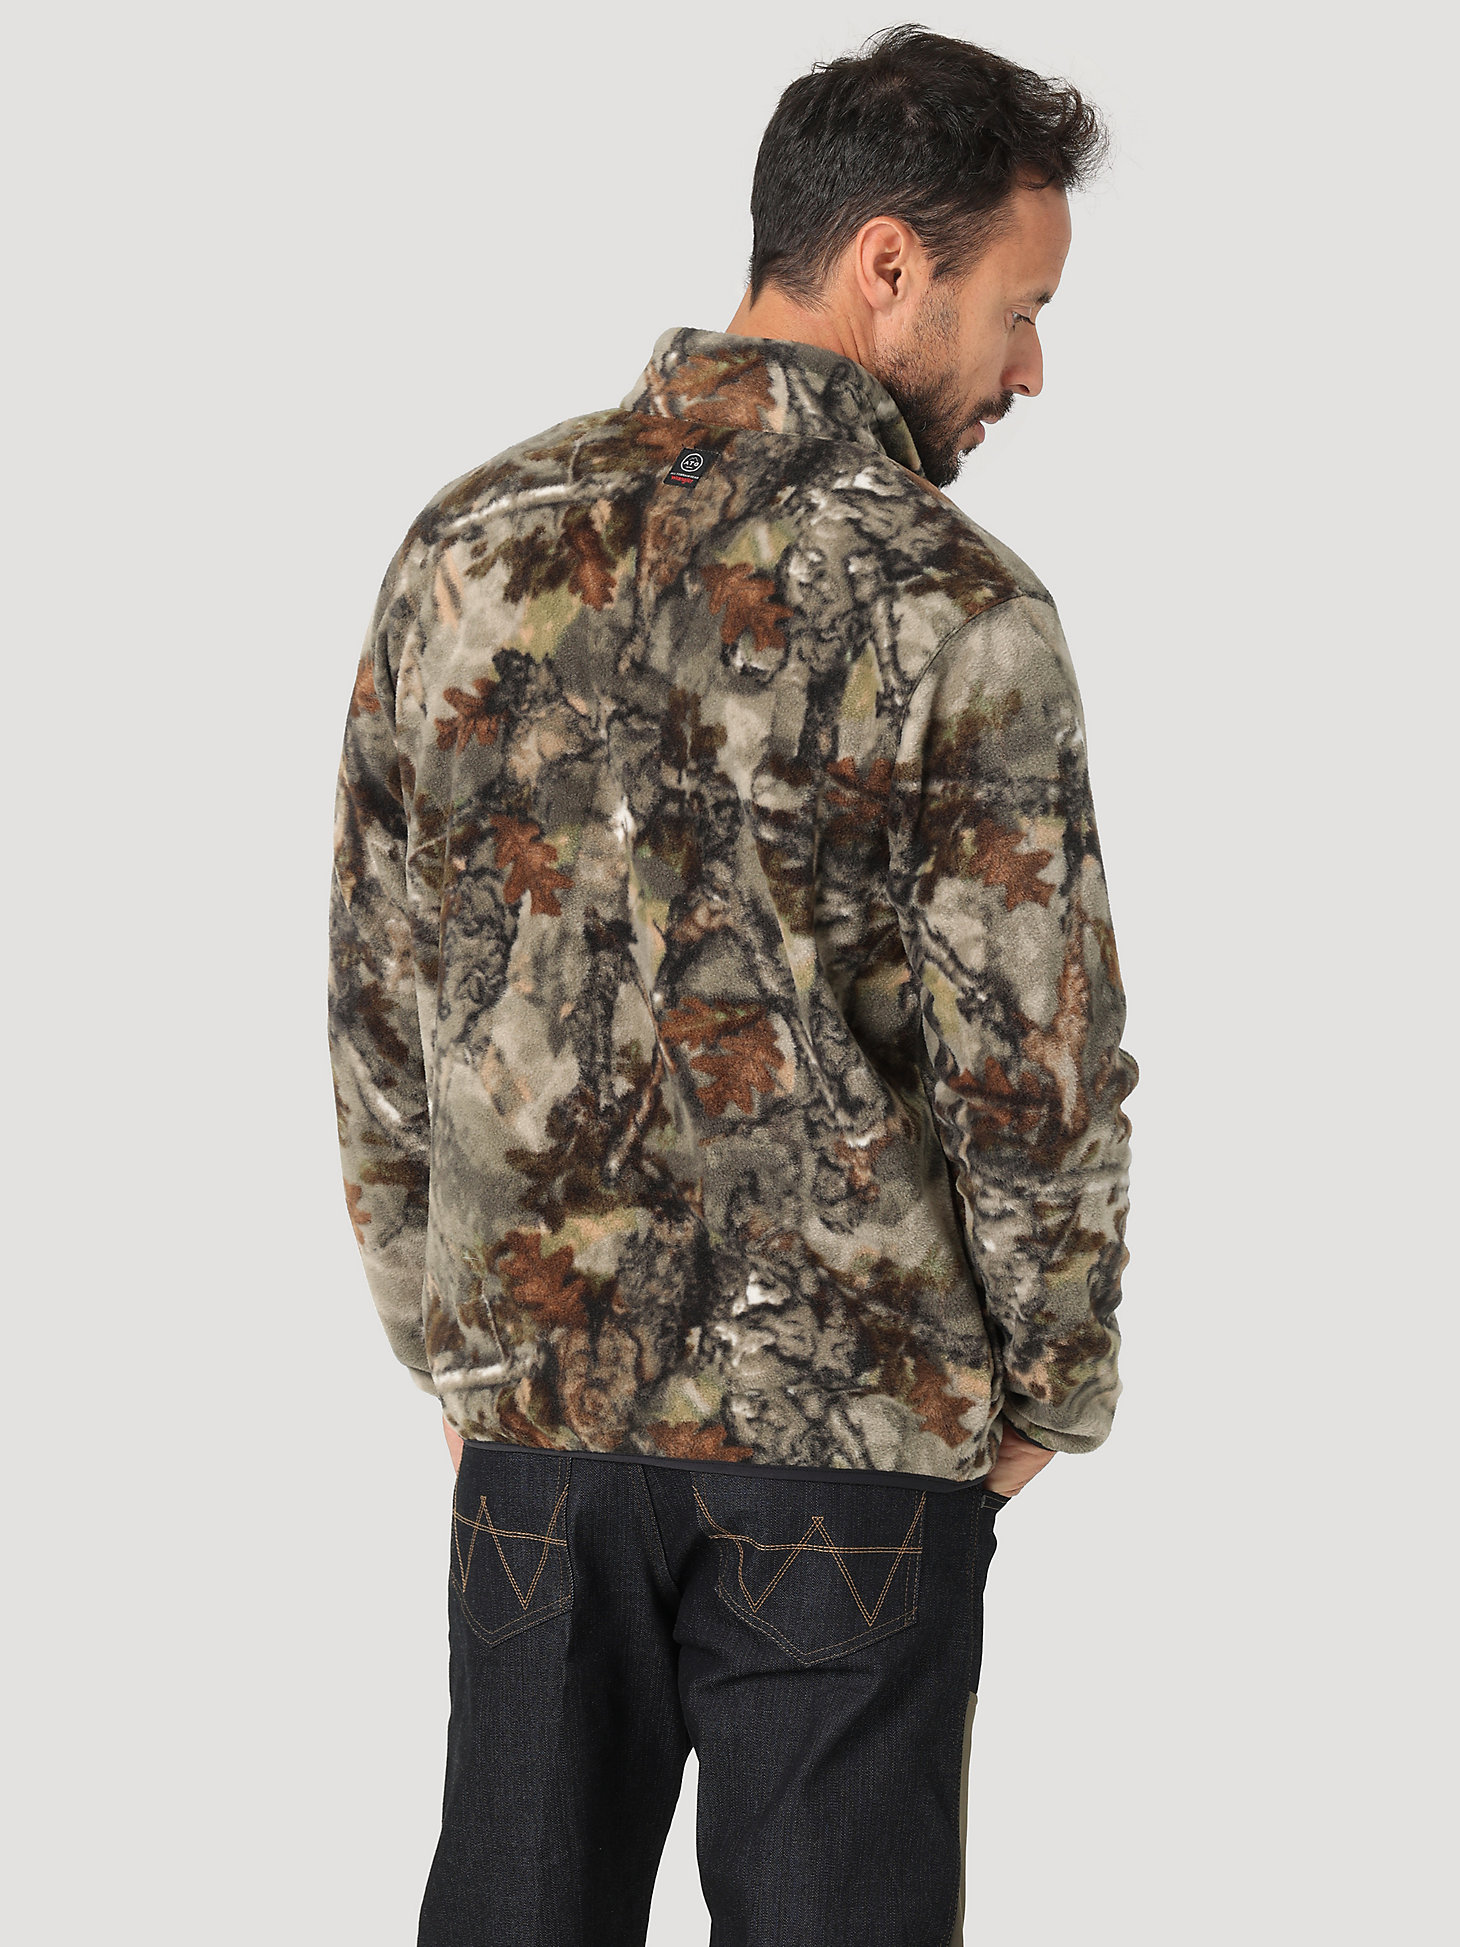 ATG Hunter™ Men's Fleece Jacket in Warmwoods Camo alternative view 2